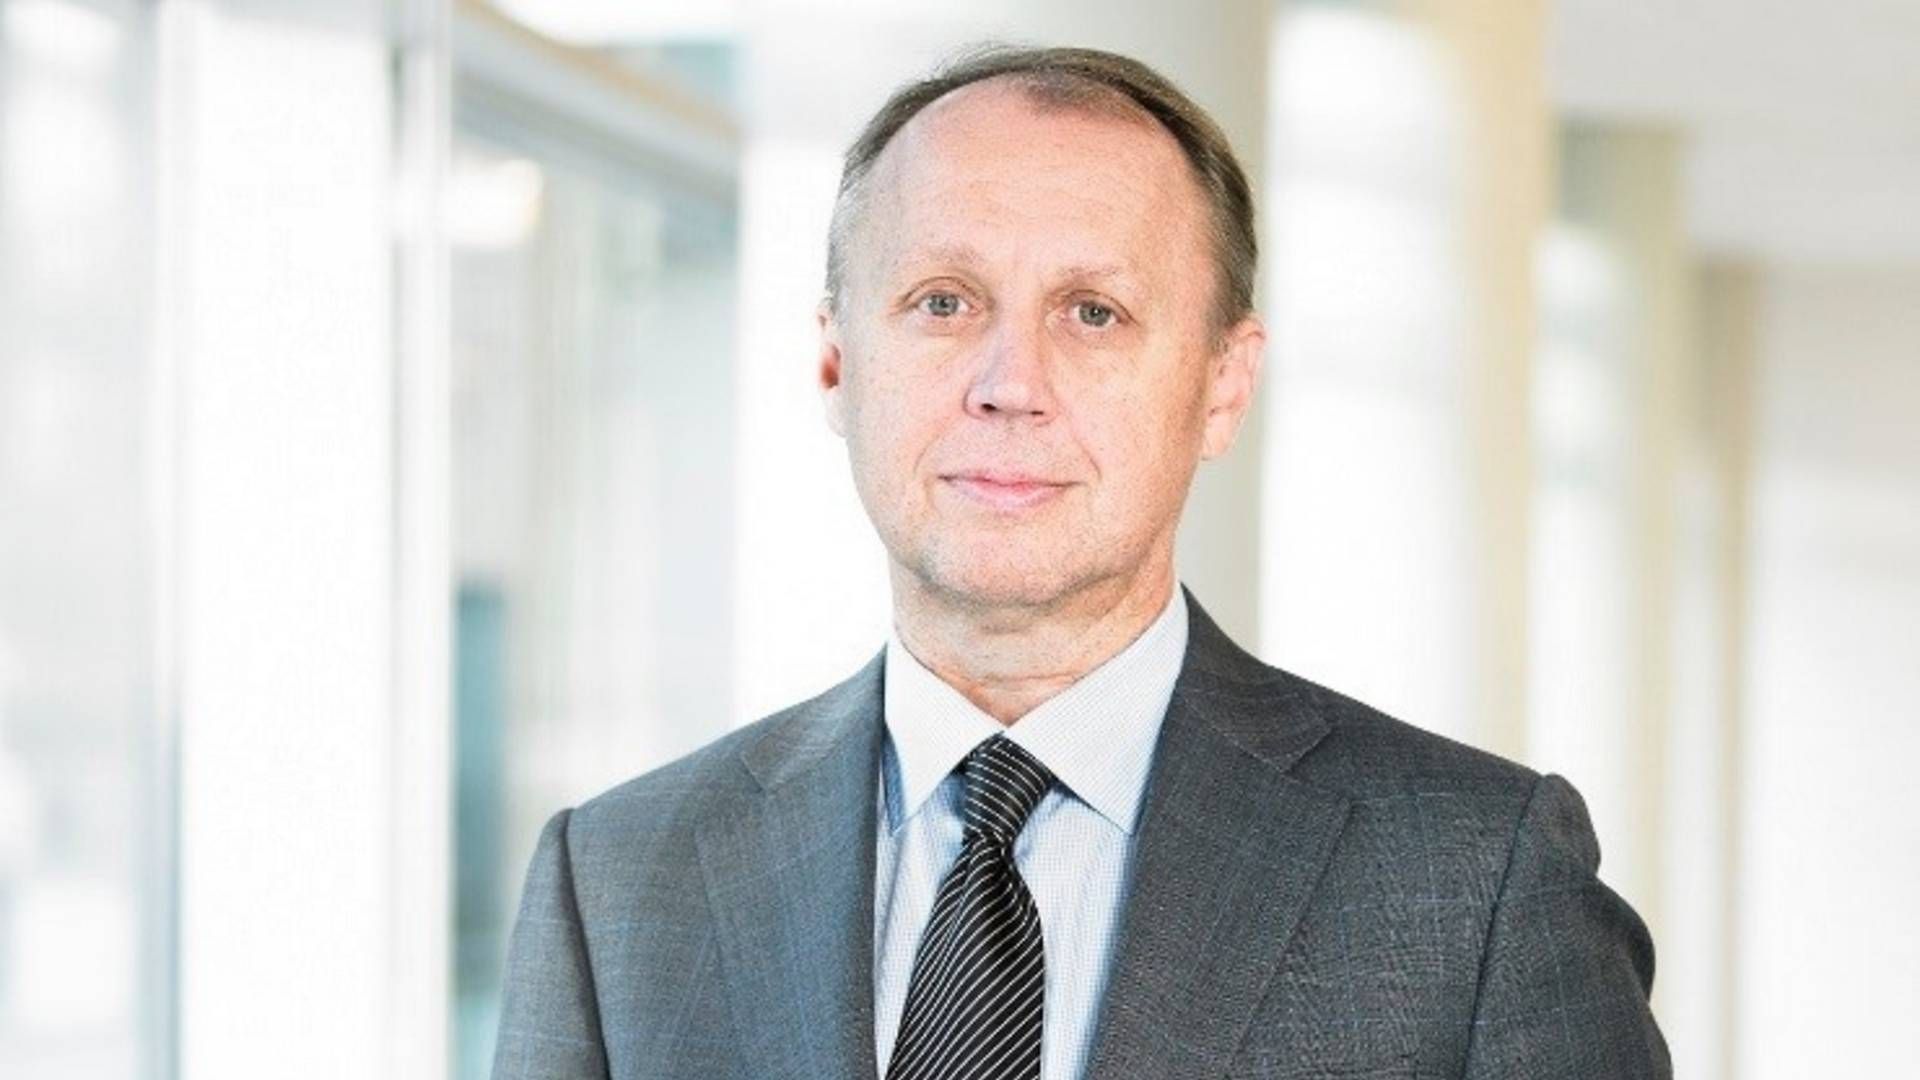 Den tidligere Bioporto-topchef Peter Mørch Eriksen, bliver indstillet som ny formand for Monsenso på selskabets generalforsamling 6. april. | Foto: Bioporto / PR